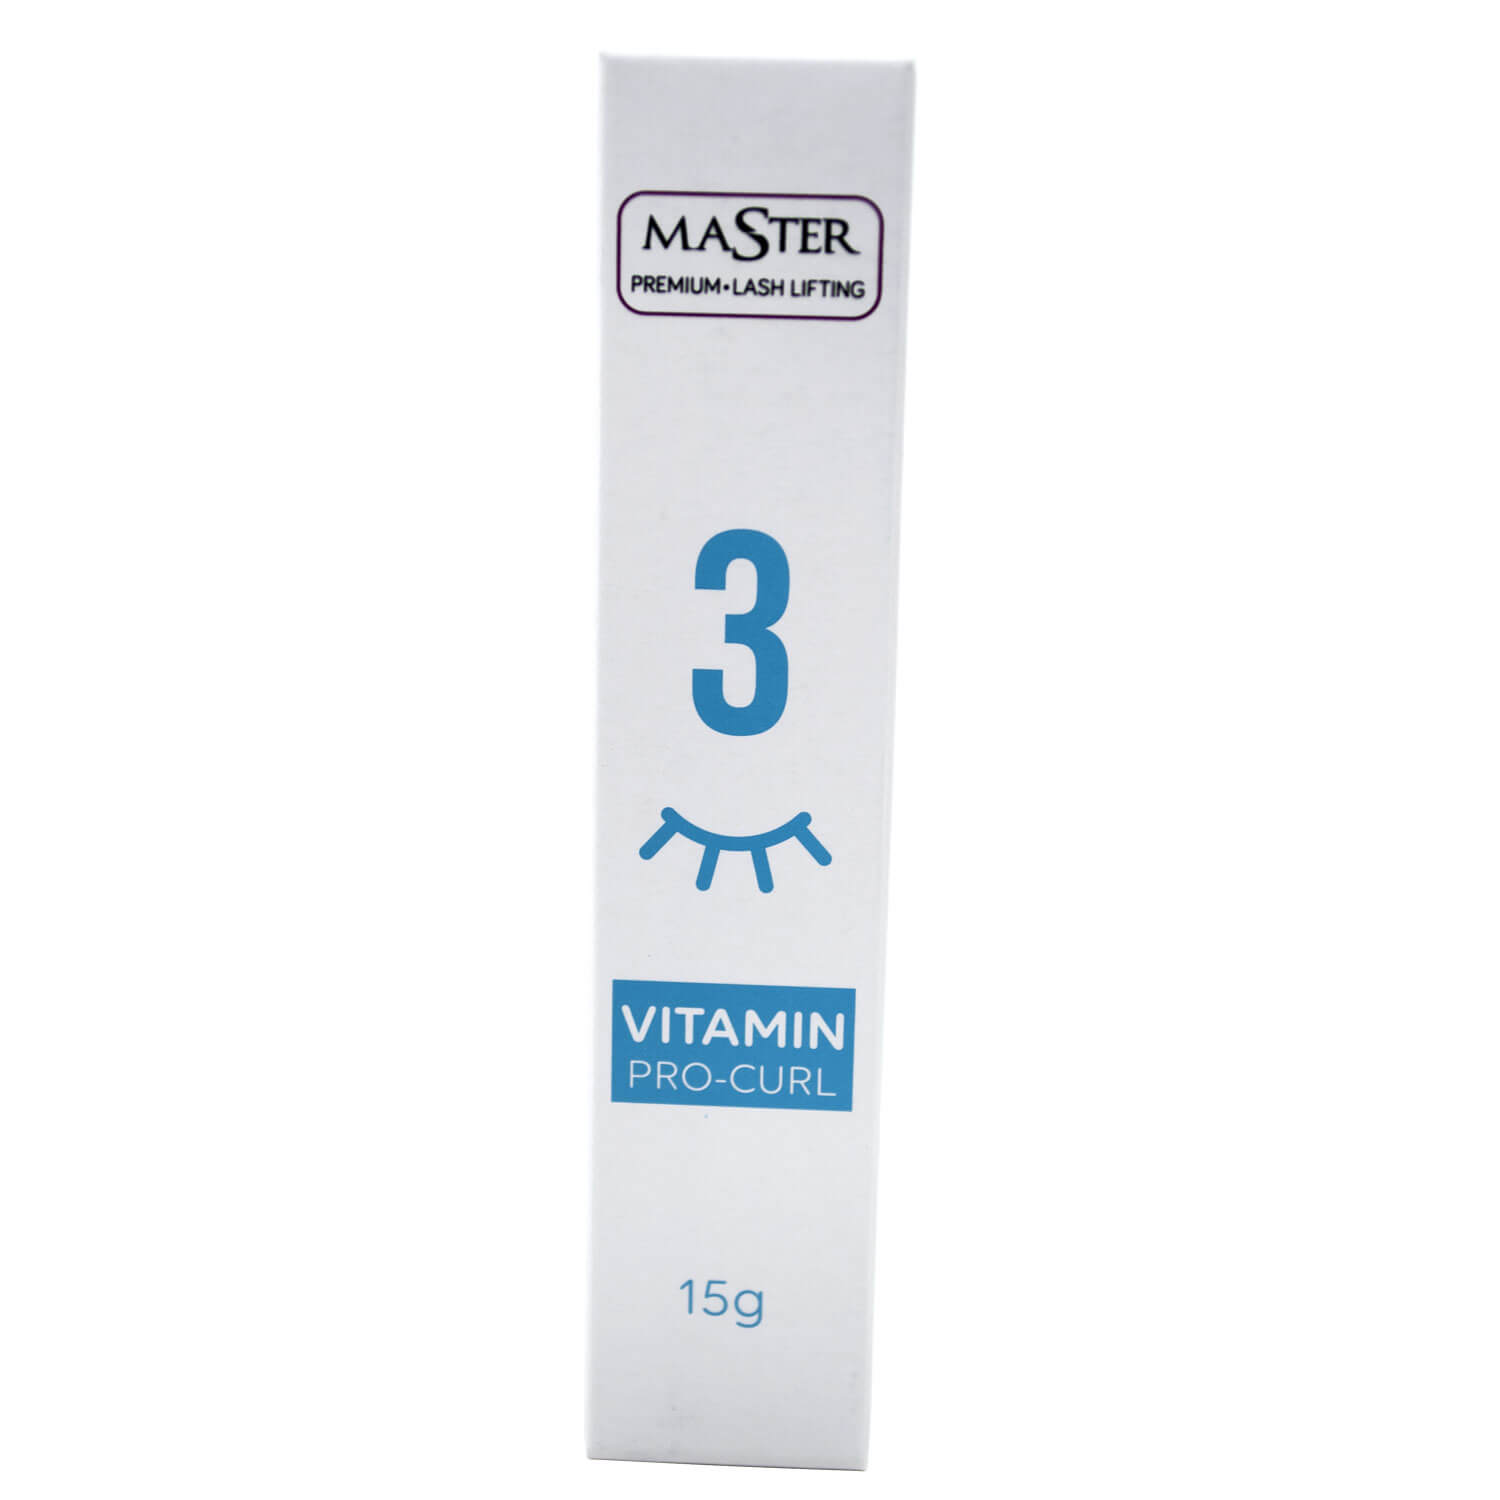 Master Premium Vitamin Pro-Curl 15g